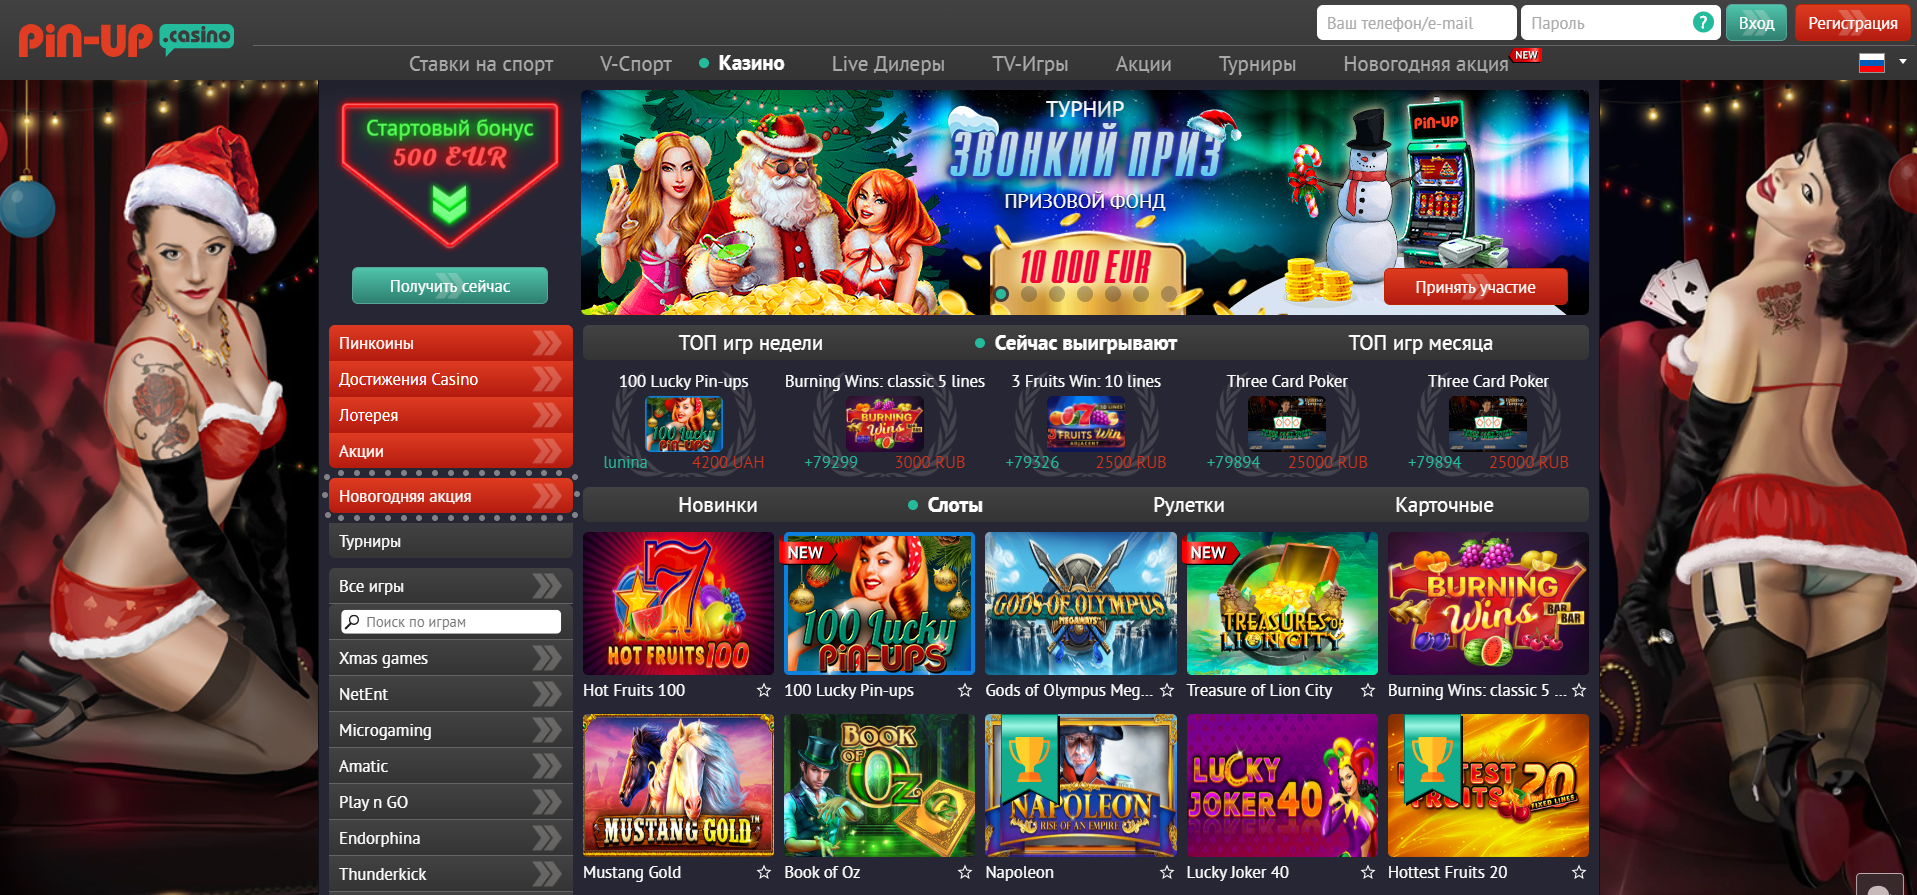 Pin up bet казино онлайн игровые автоматы адмирал три икса